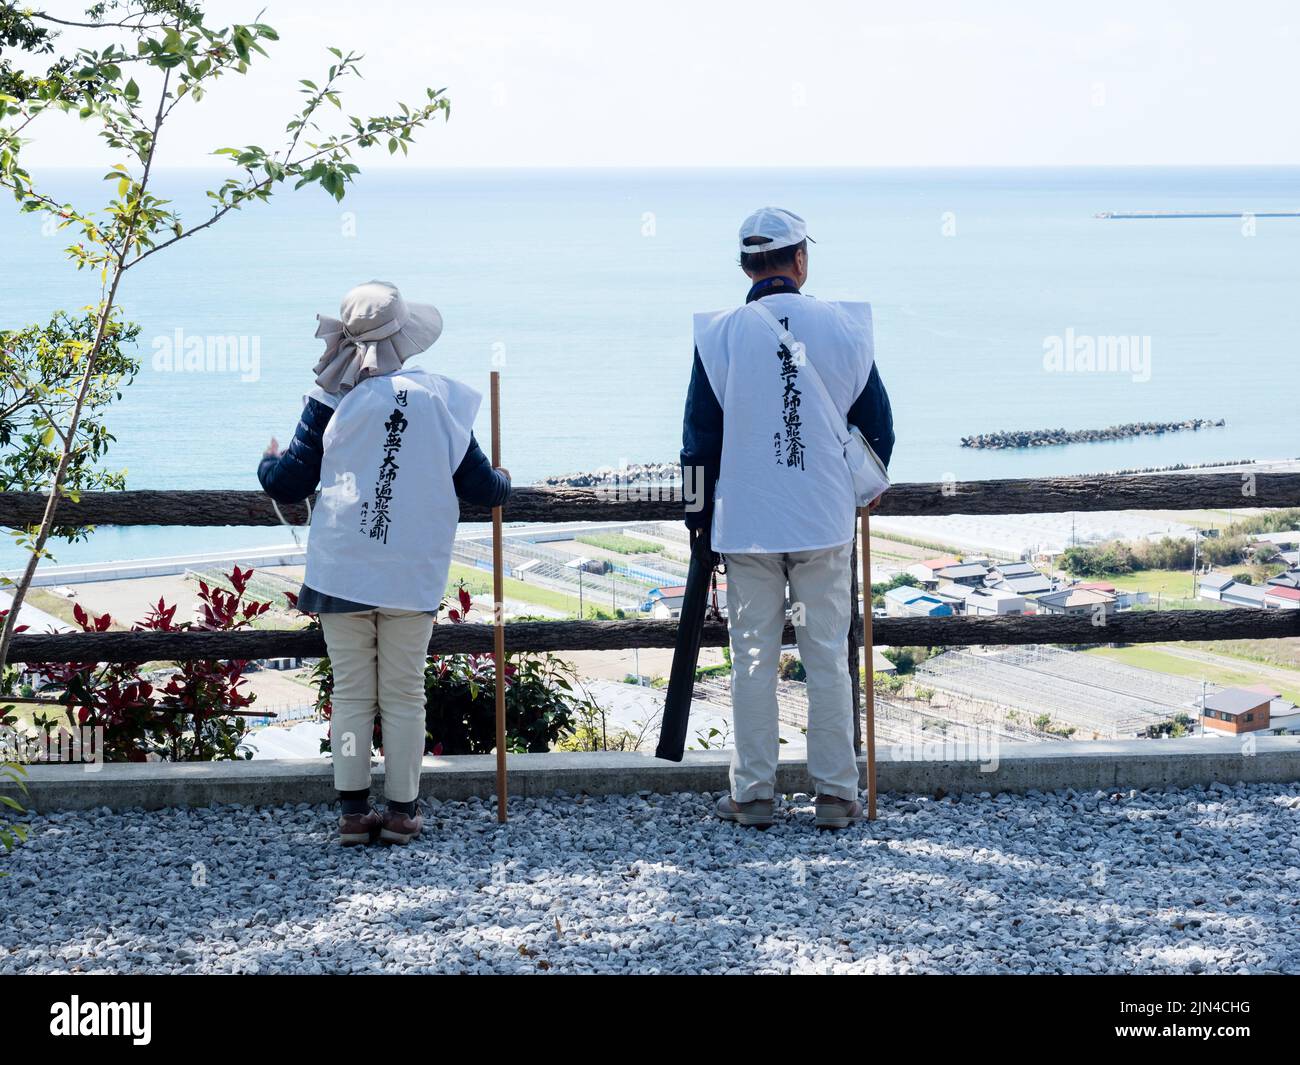 Kochi, Japon - 7 avril 2018 : pèlerins admirant la vue du littoral de Kochi depuis Zenjibuji, temple numéro 32 du pèlerinage de Shikoku Banque D'Images